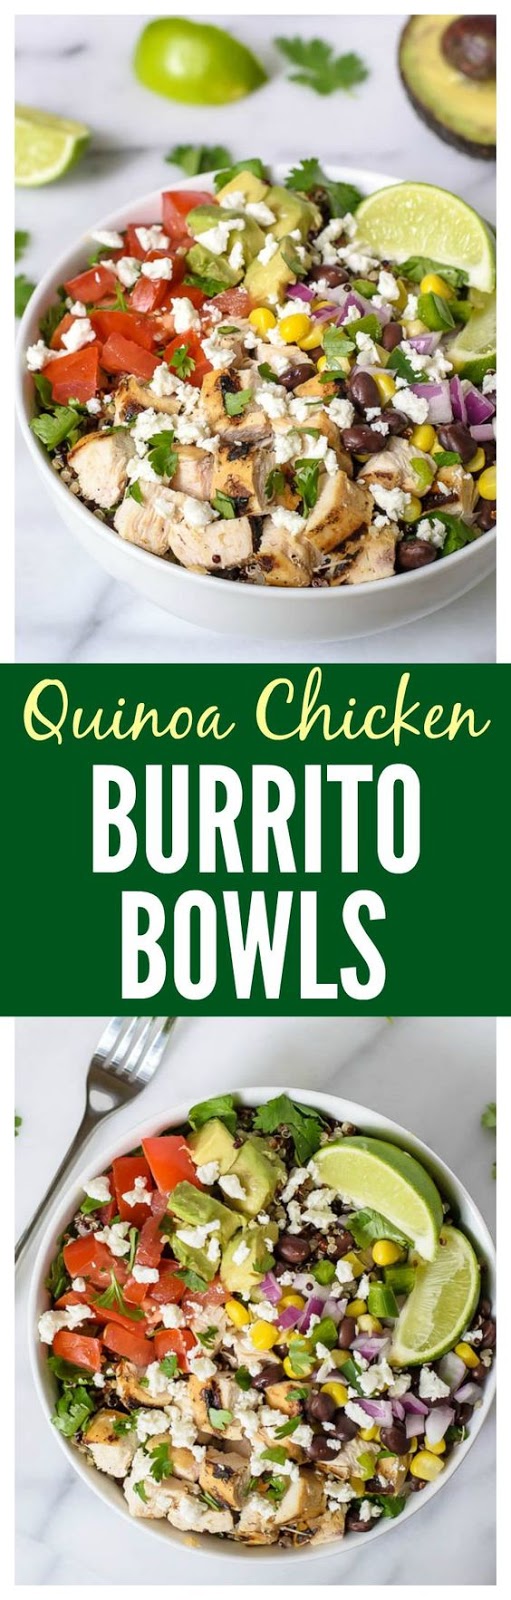 Chipotle Burrito Bowls with Chicken, Quinoa, and Avocado - Foodandcake123